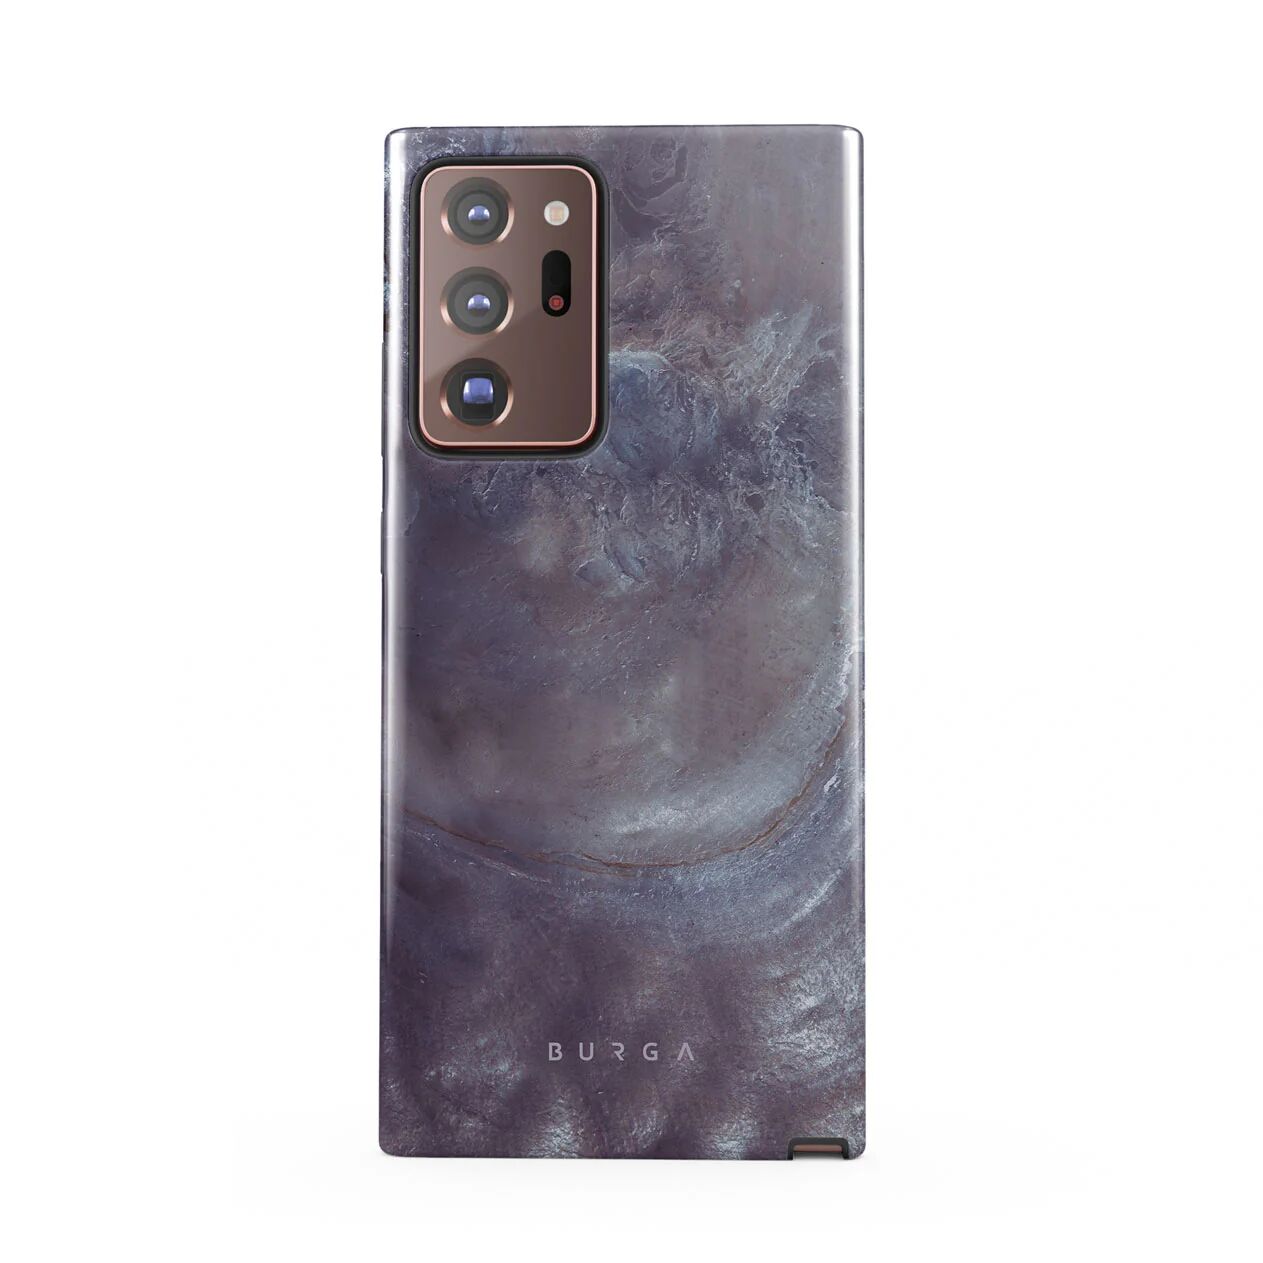 BURGA Side Effect - Samsung Galaxy Note 20 Ultra 5G Case